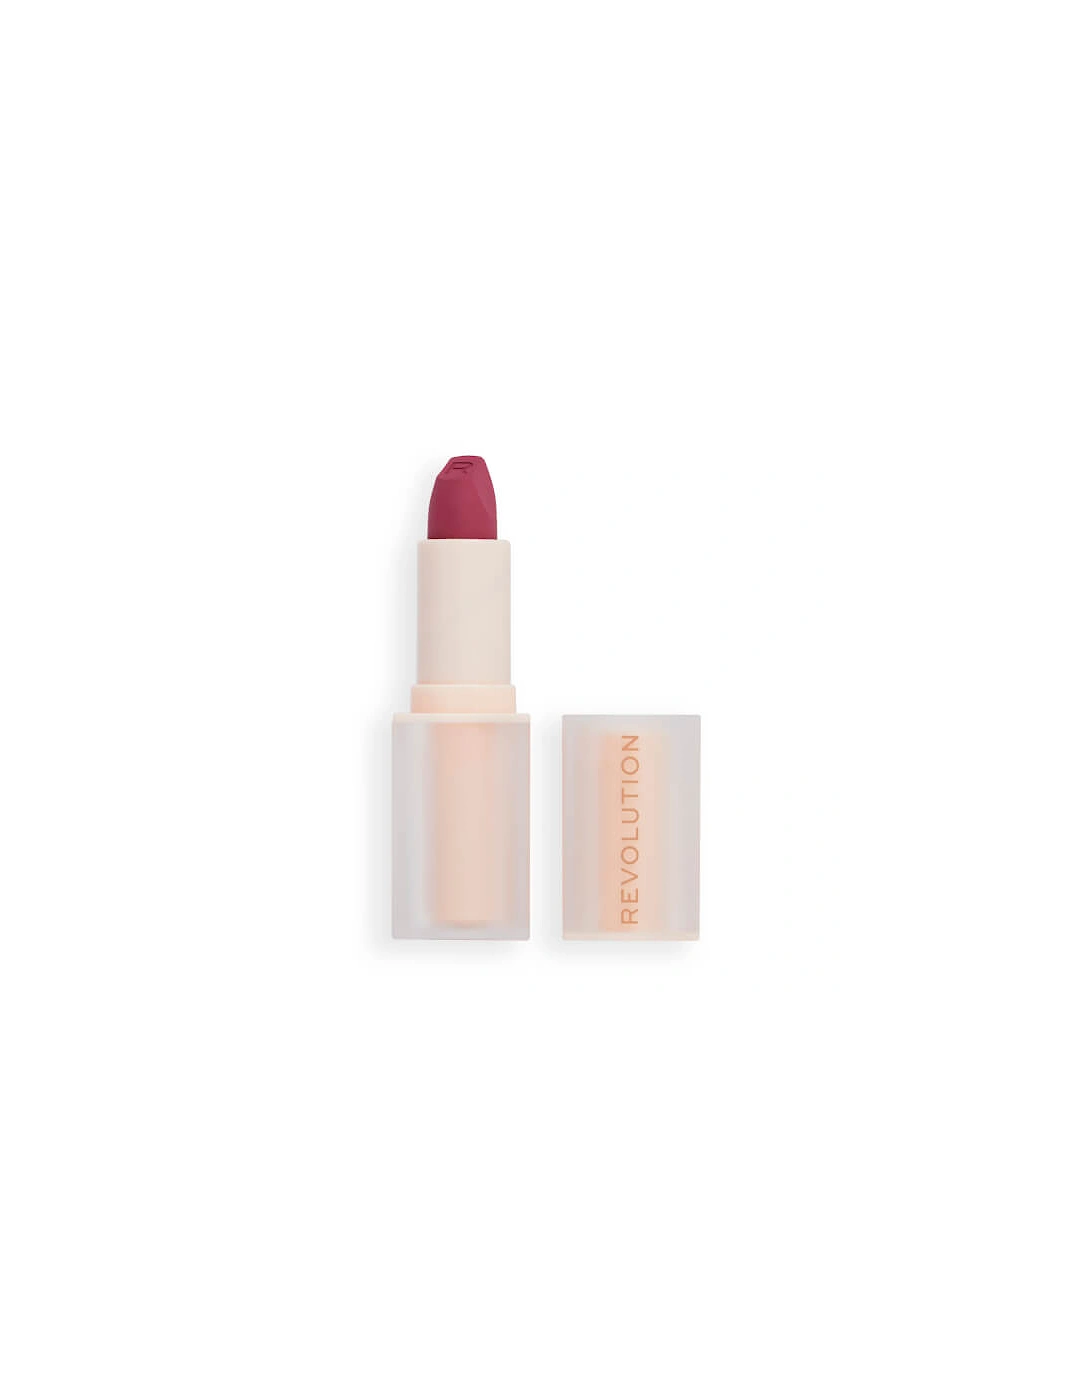 Makeup Lip Allure Soft Satin Lipstick - Berry Boss, 2 of 1